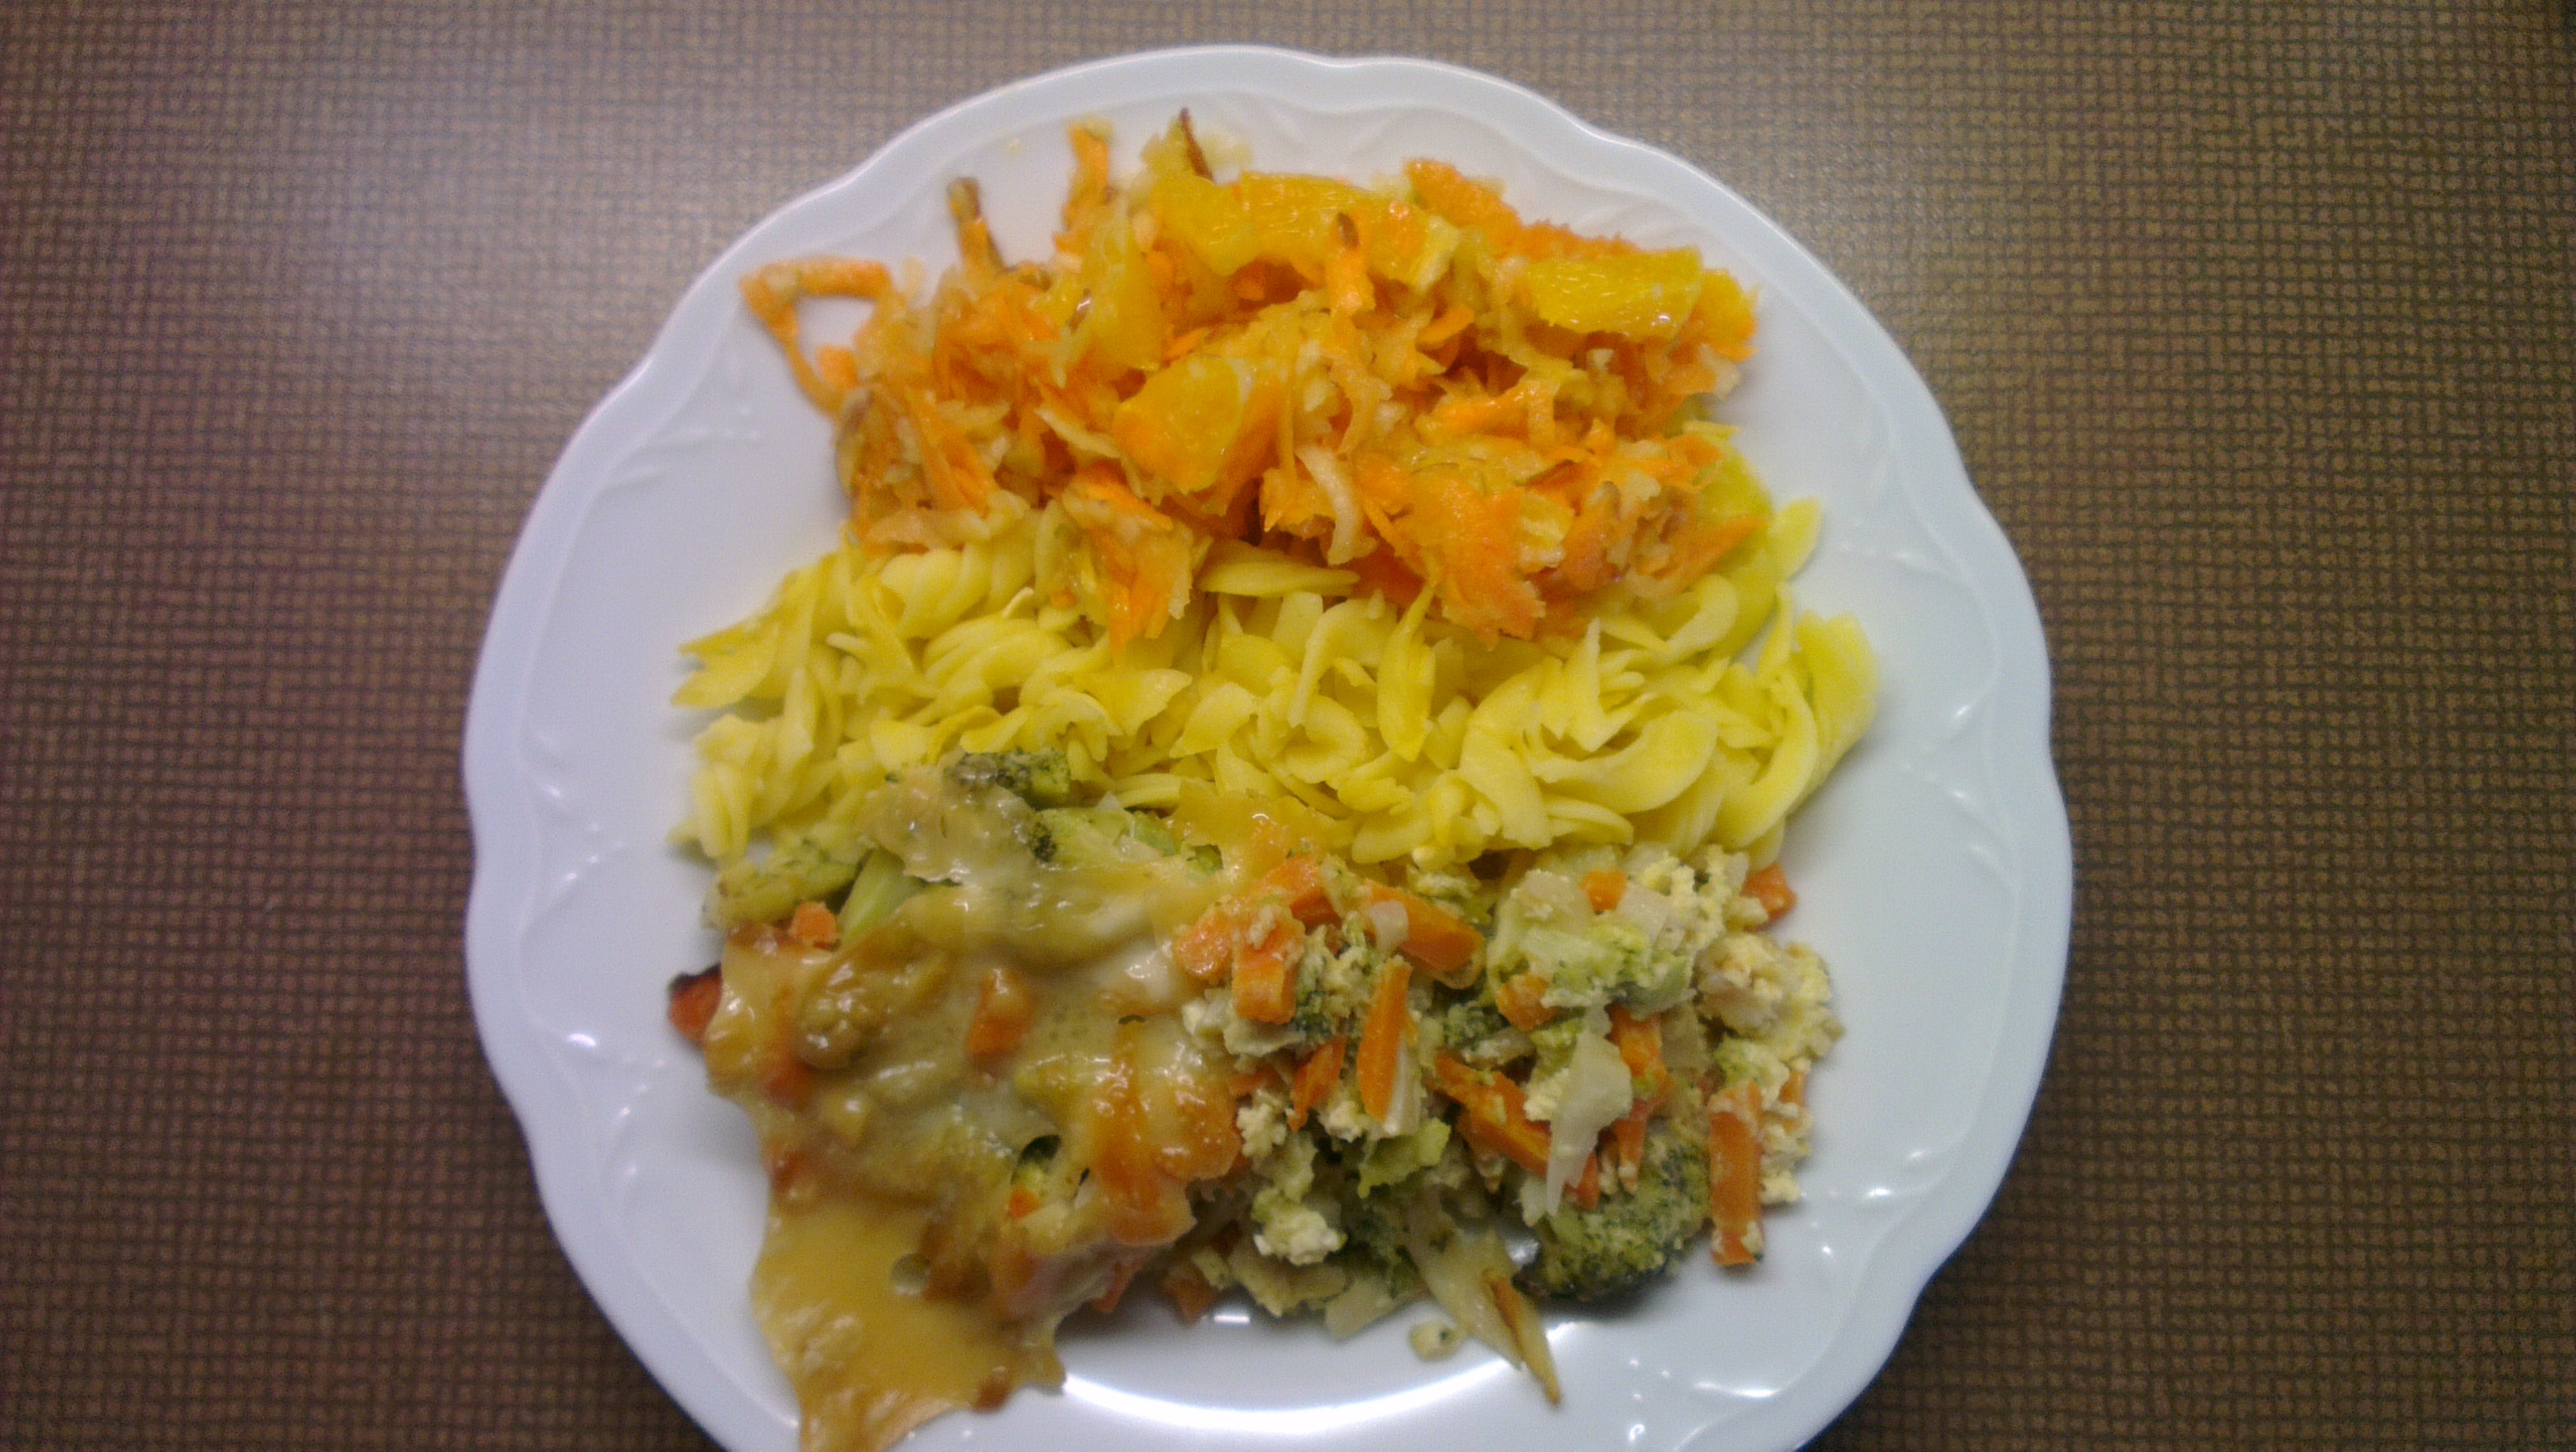 zeleninový nákyp, těstoviny, mrkvový salát s pomerančem a jablkem